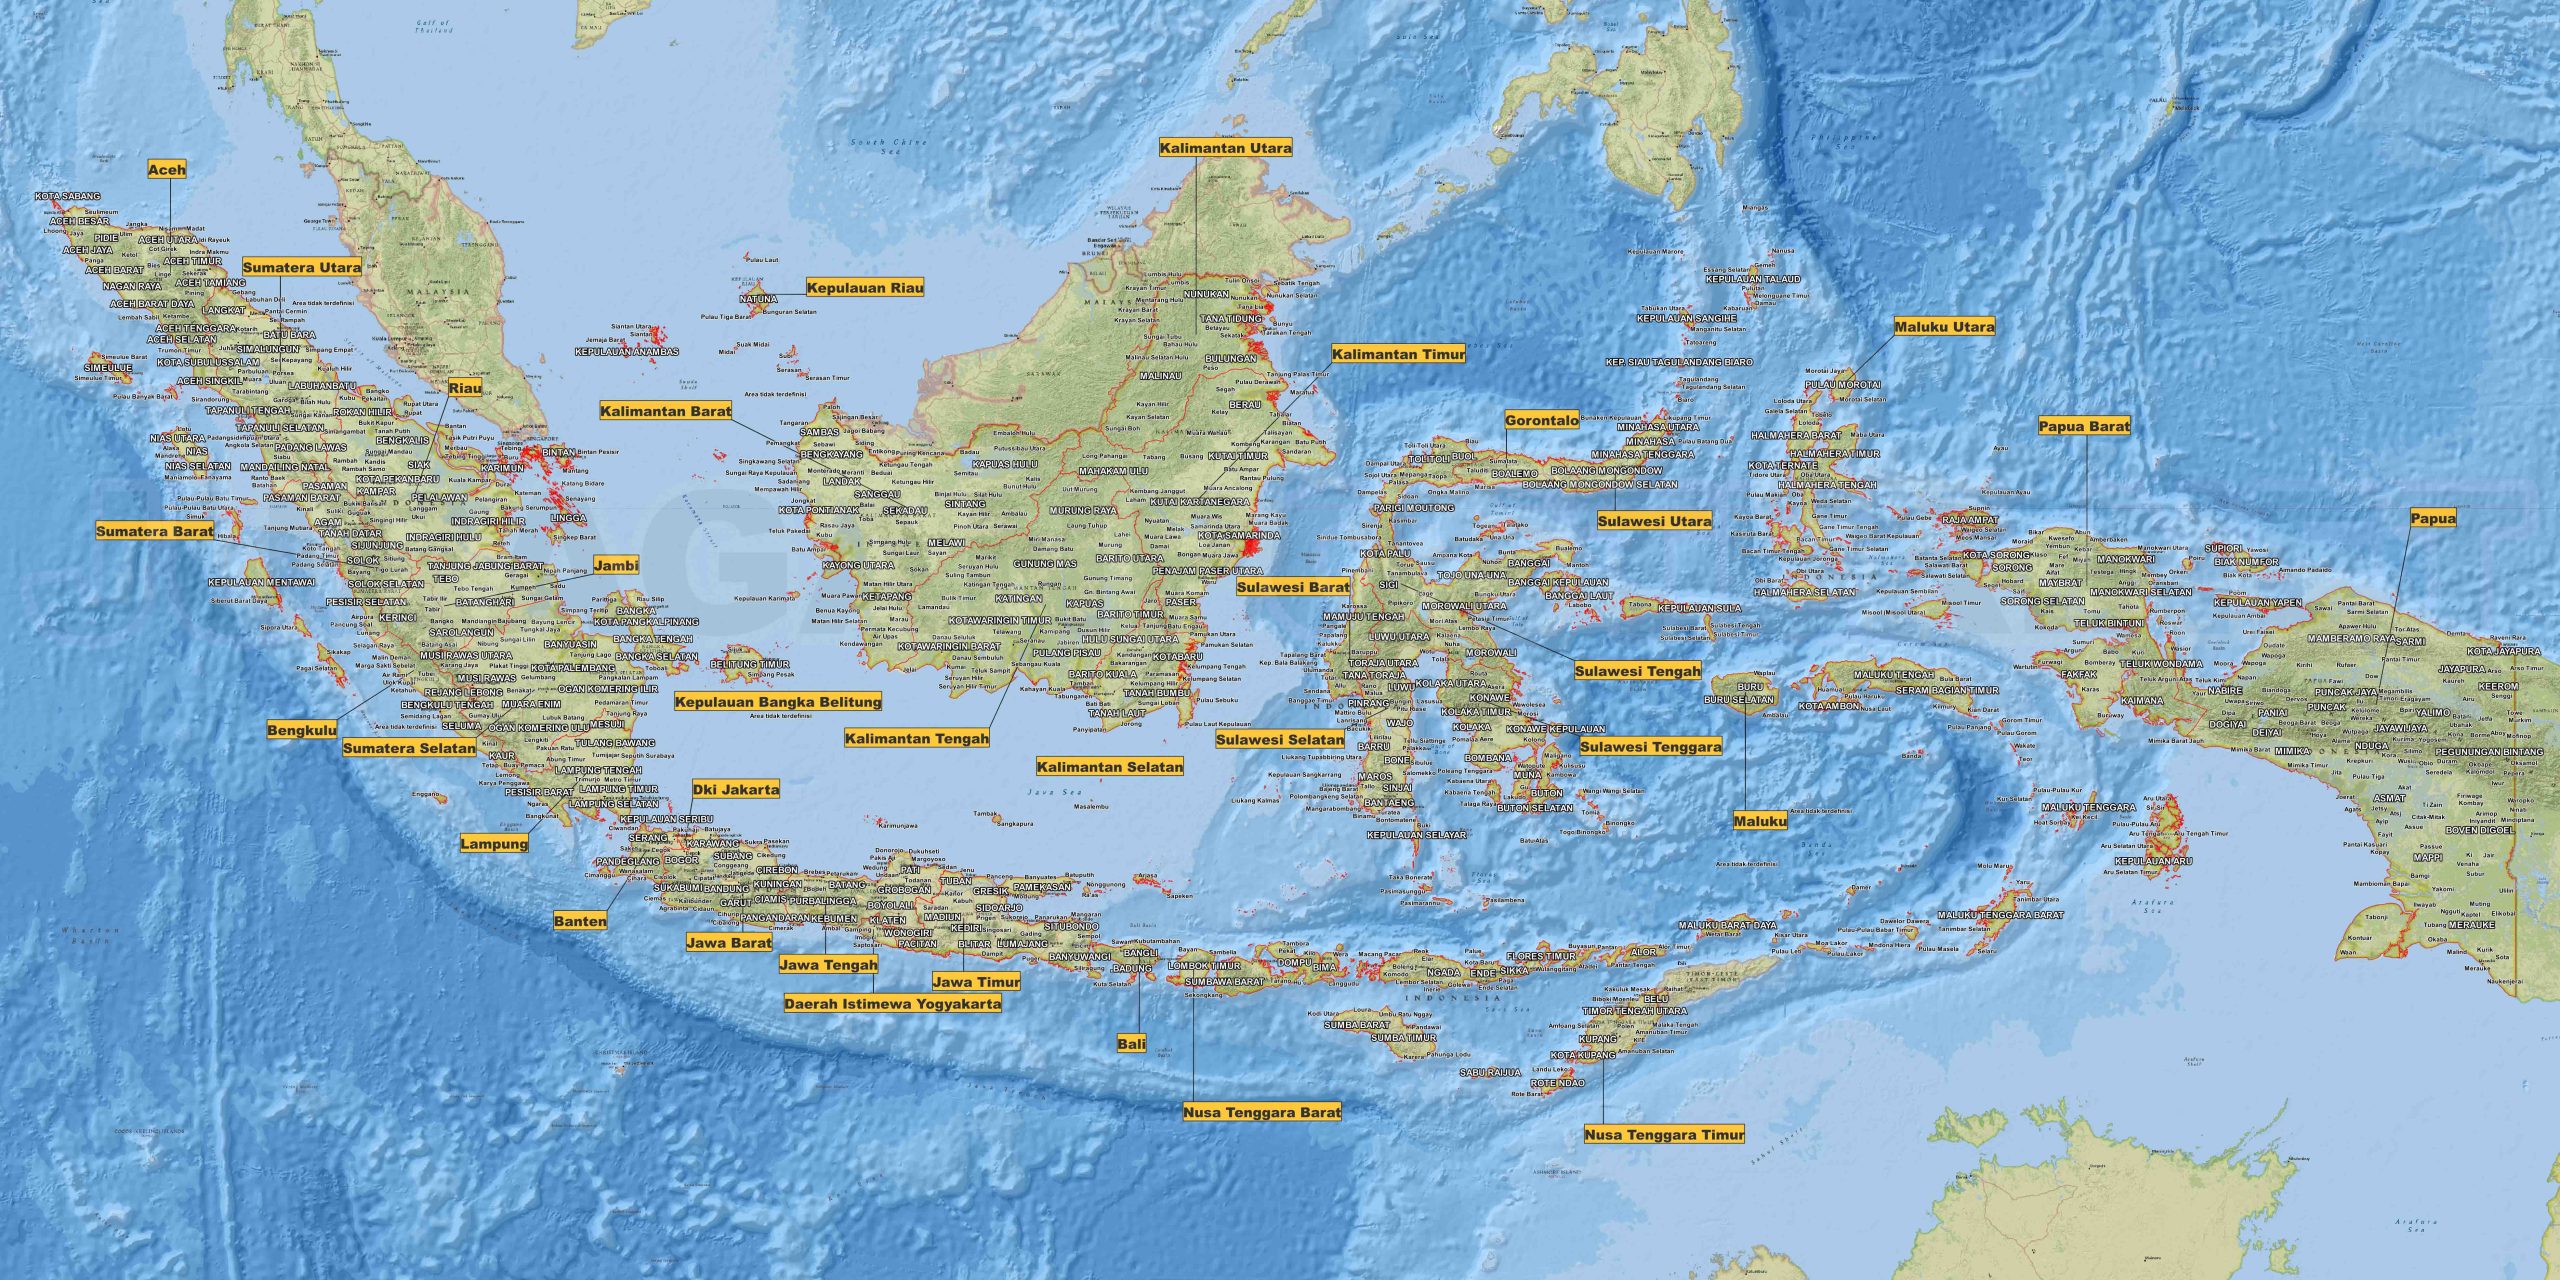 Cara Gambar Peta Indonesia: Panduan Praktis